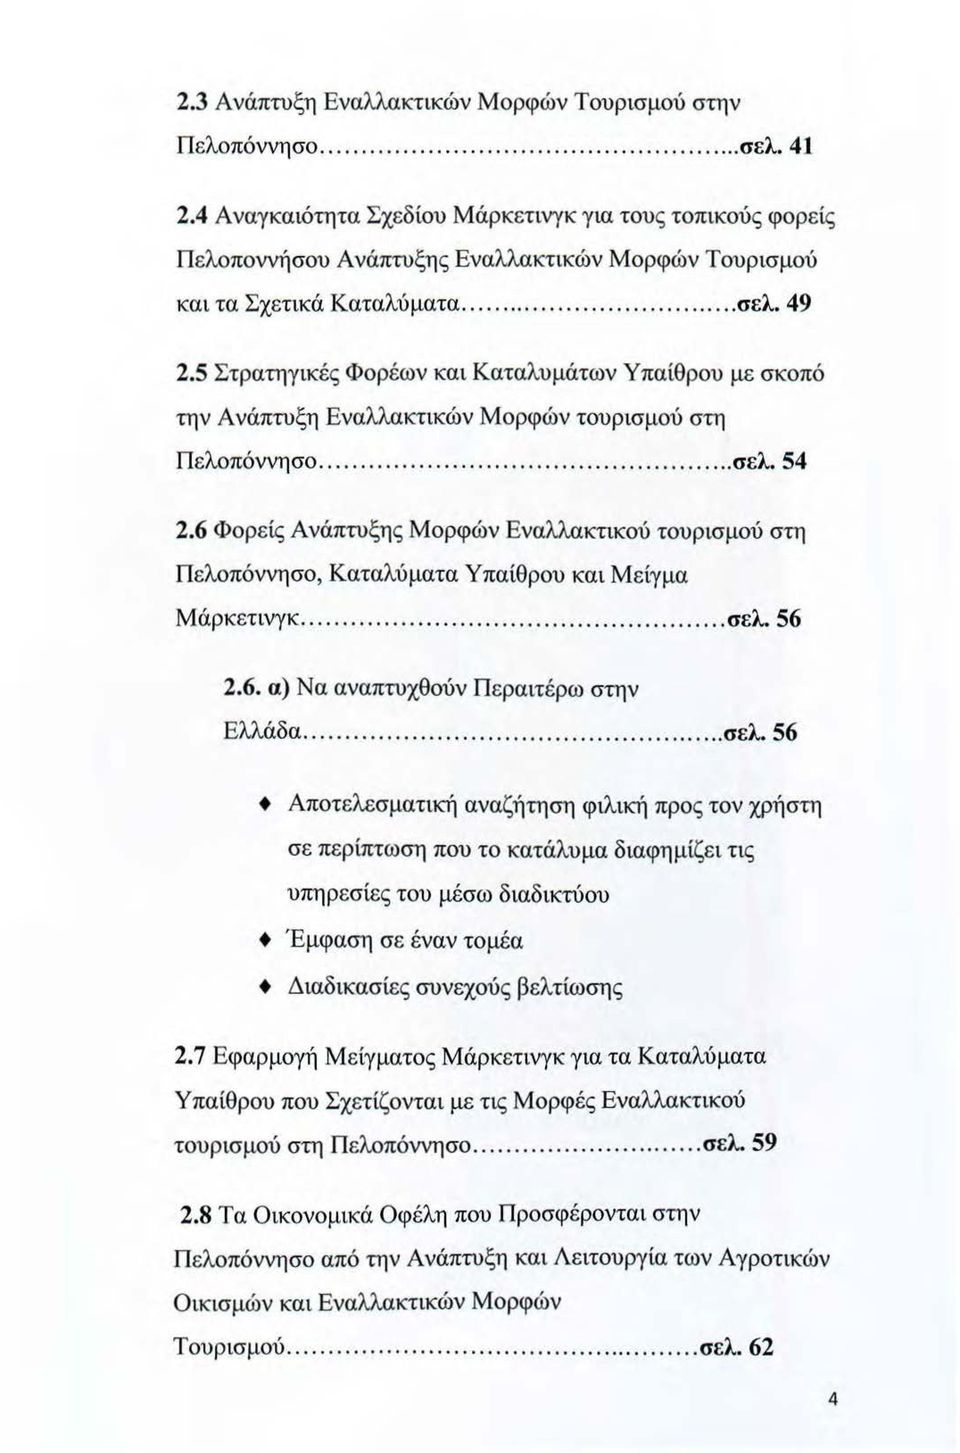 5 Στρατηγικές Φορέων και Καταλυμάτων Υπαίθρου με σκοπό την Ανάπτυξη Εναλλακτικών Μορφών τουρισμού στη Πελοπόννησο... σελ. 54 2.